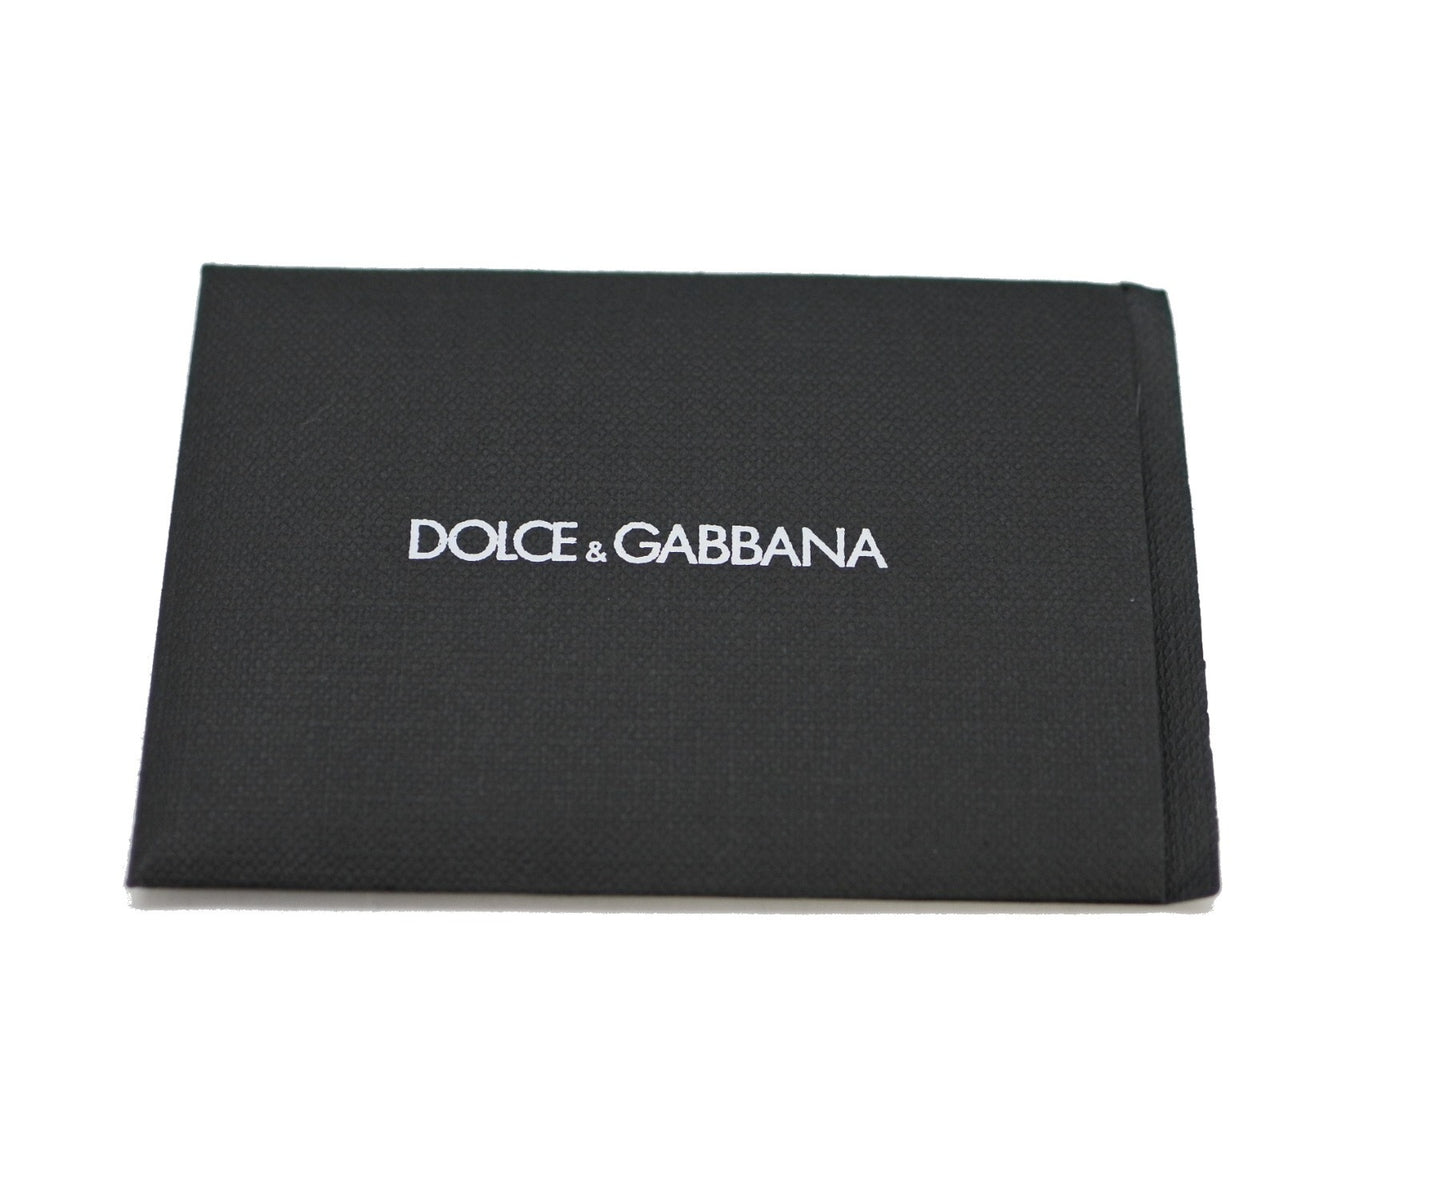 Dolce & Gabbana Borsa A Spalla/Hobo Pelle 89001